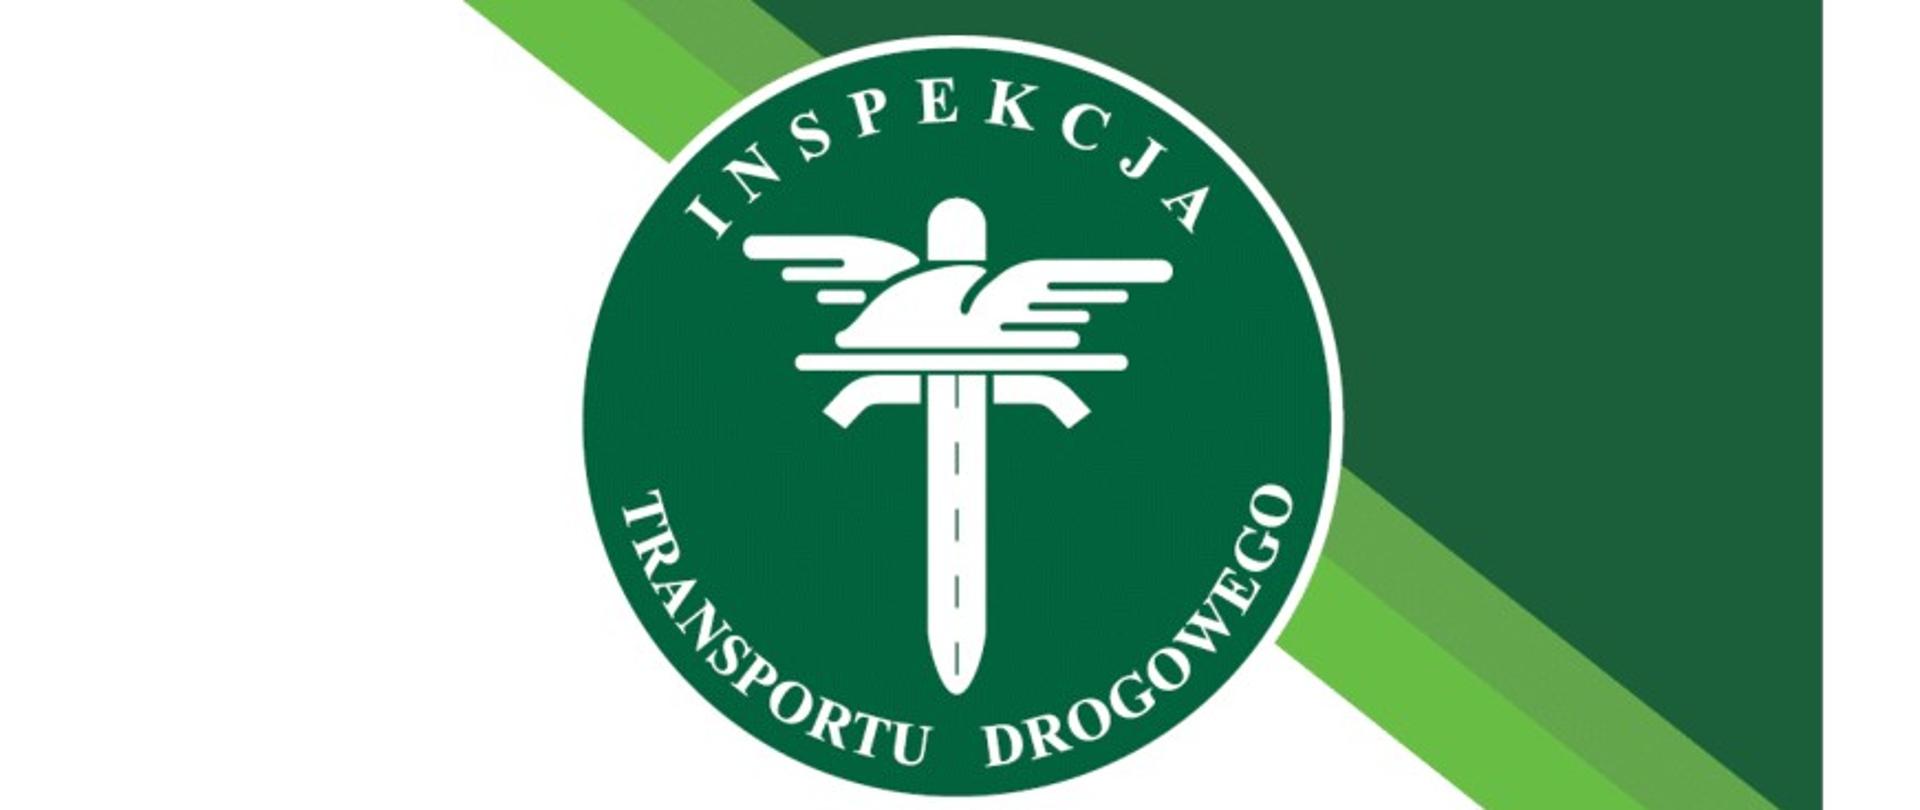 logo inspekcji transportu drogowego